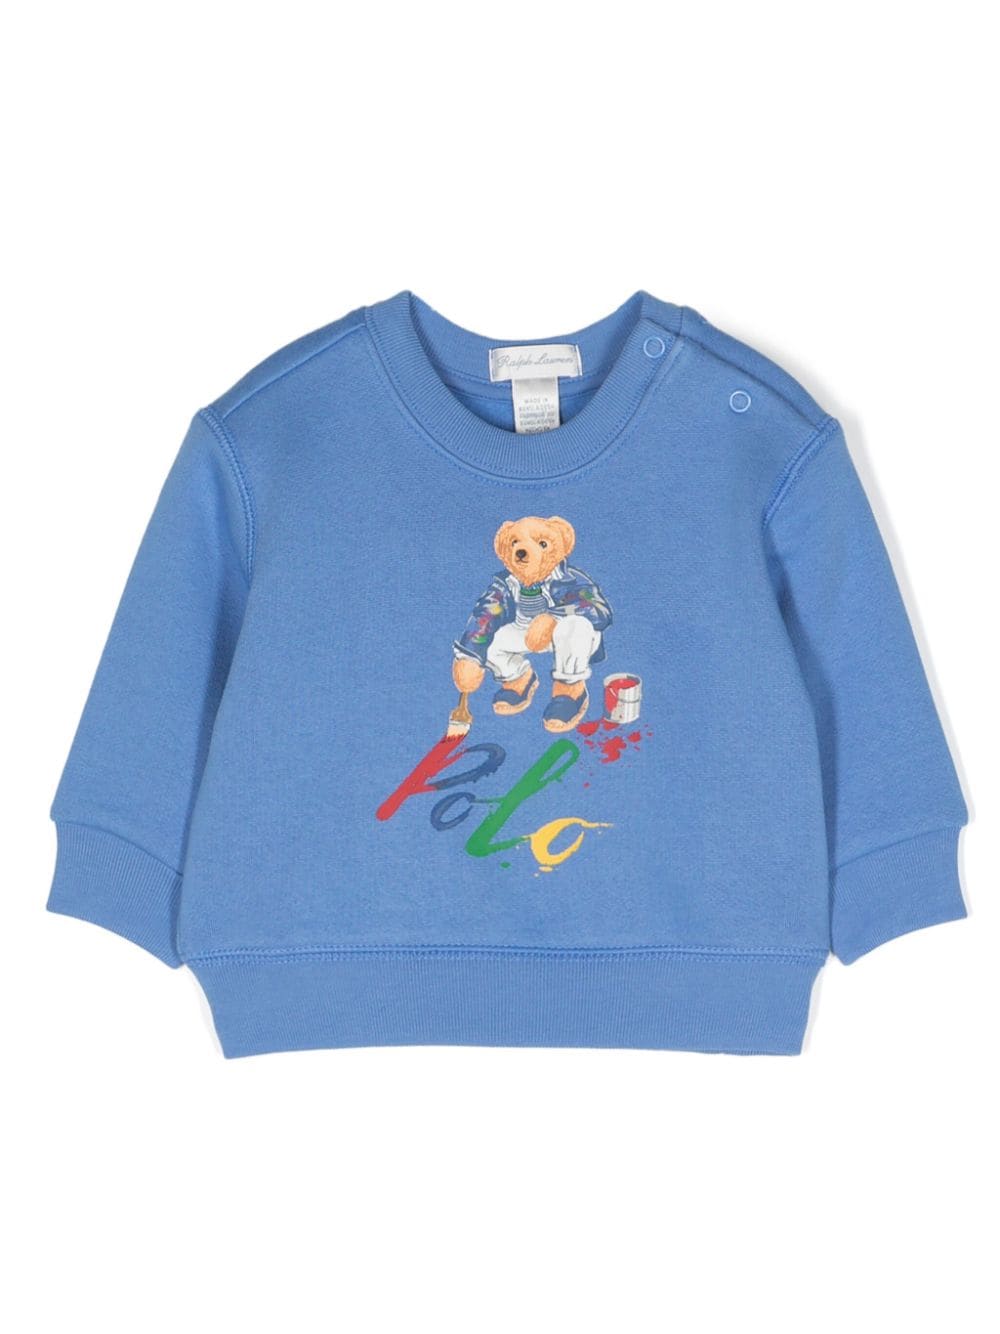 Teddy Bear cotton-blend sweatshirt<BR/><BR/>